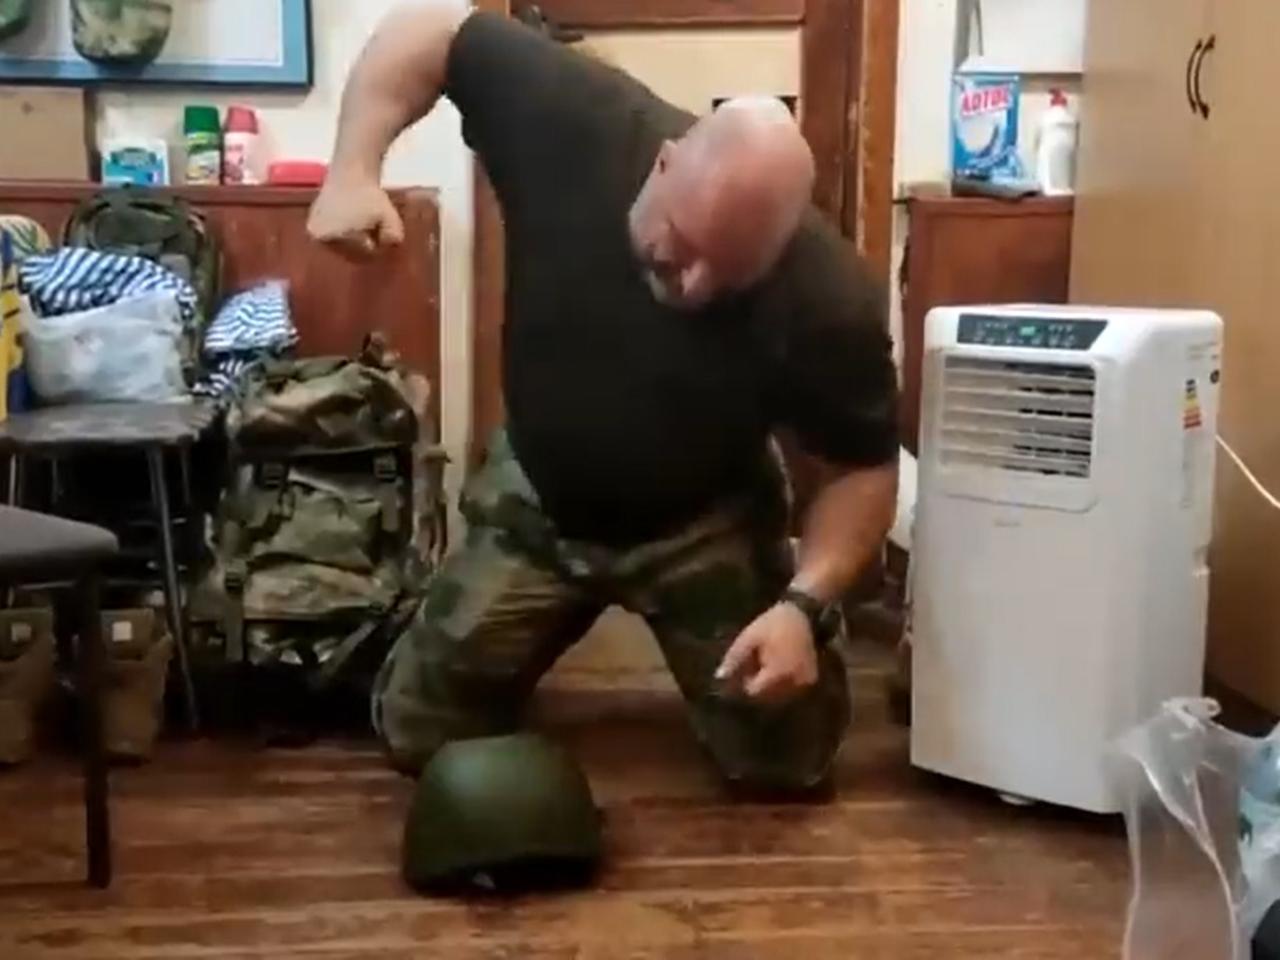 Rosyjskie hełmy to bubel. Ten ukraiński żołnierz rozgniata je pięścią